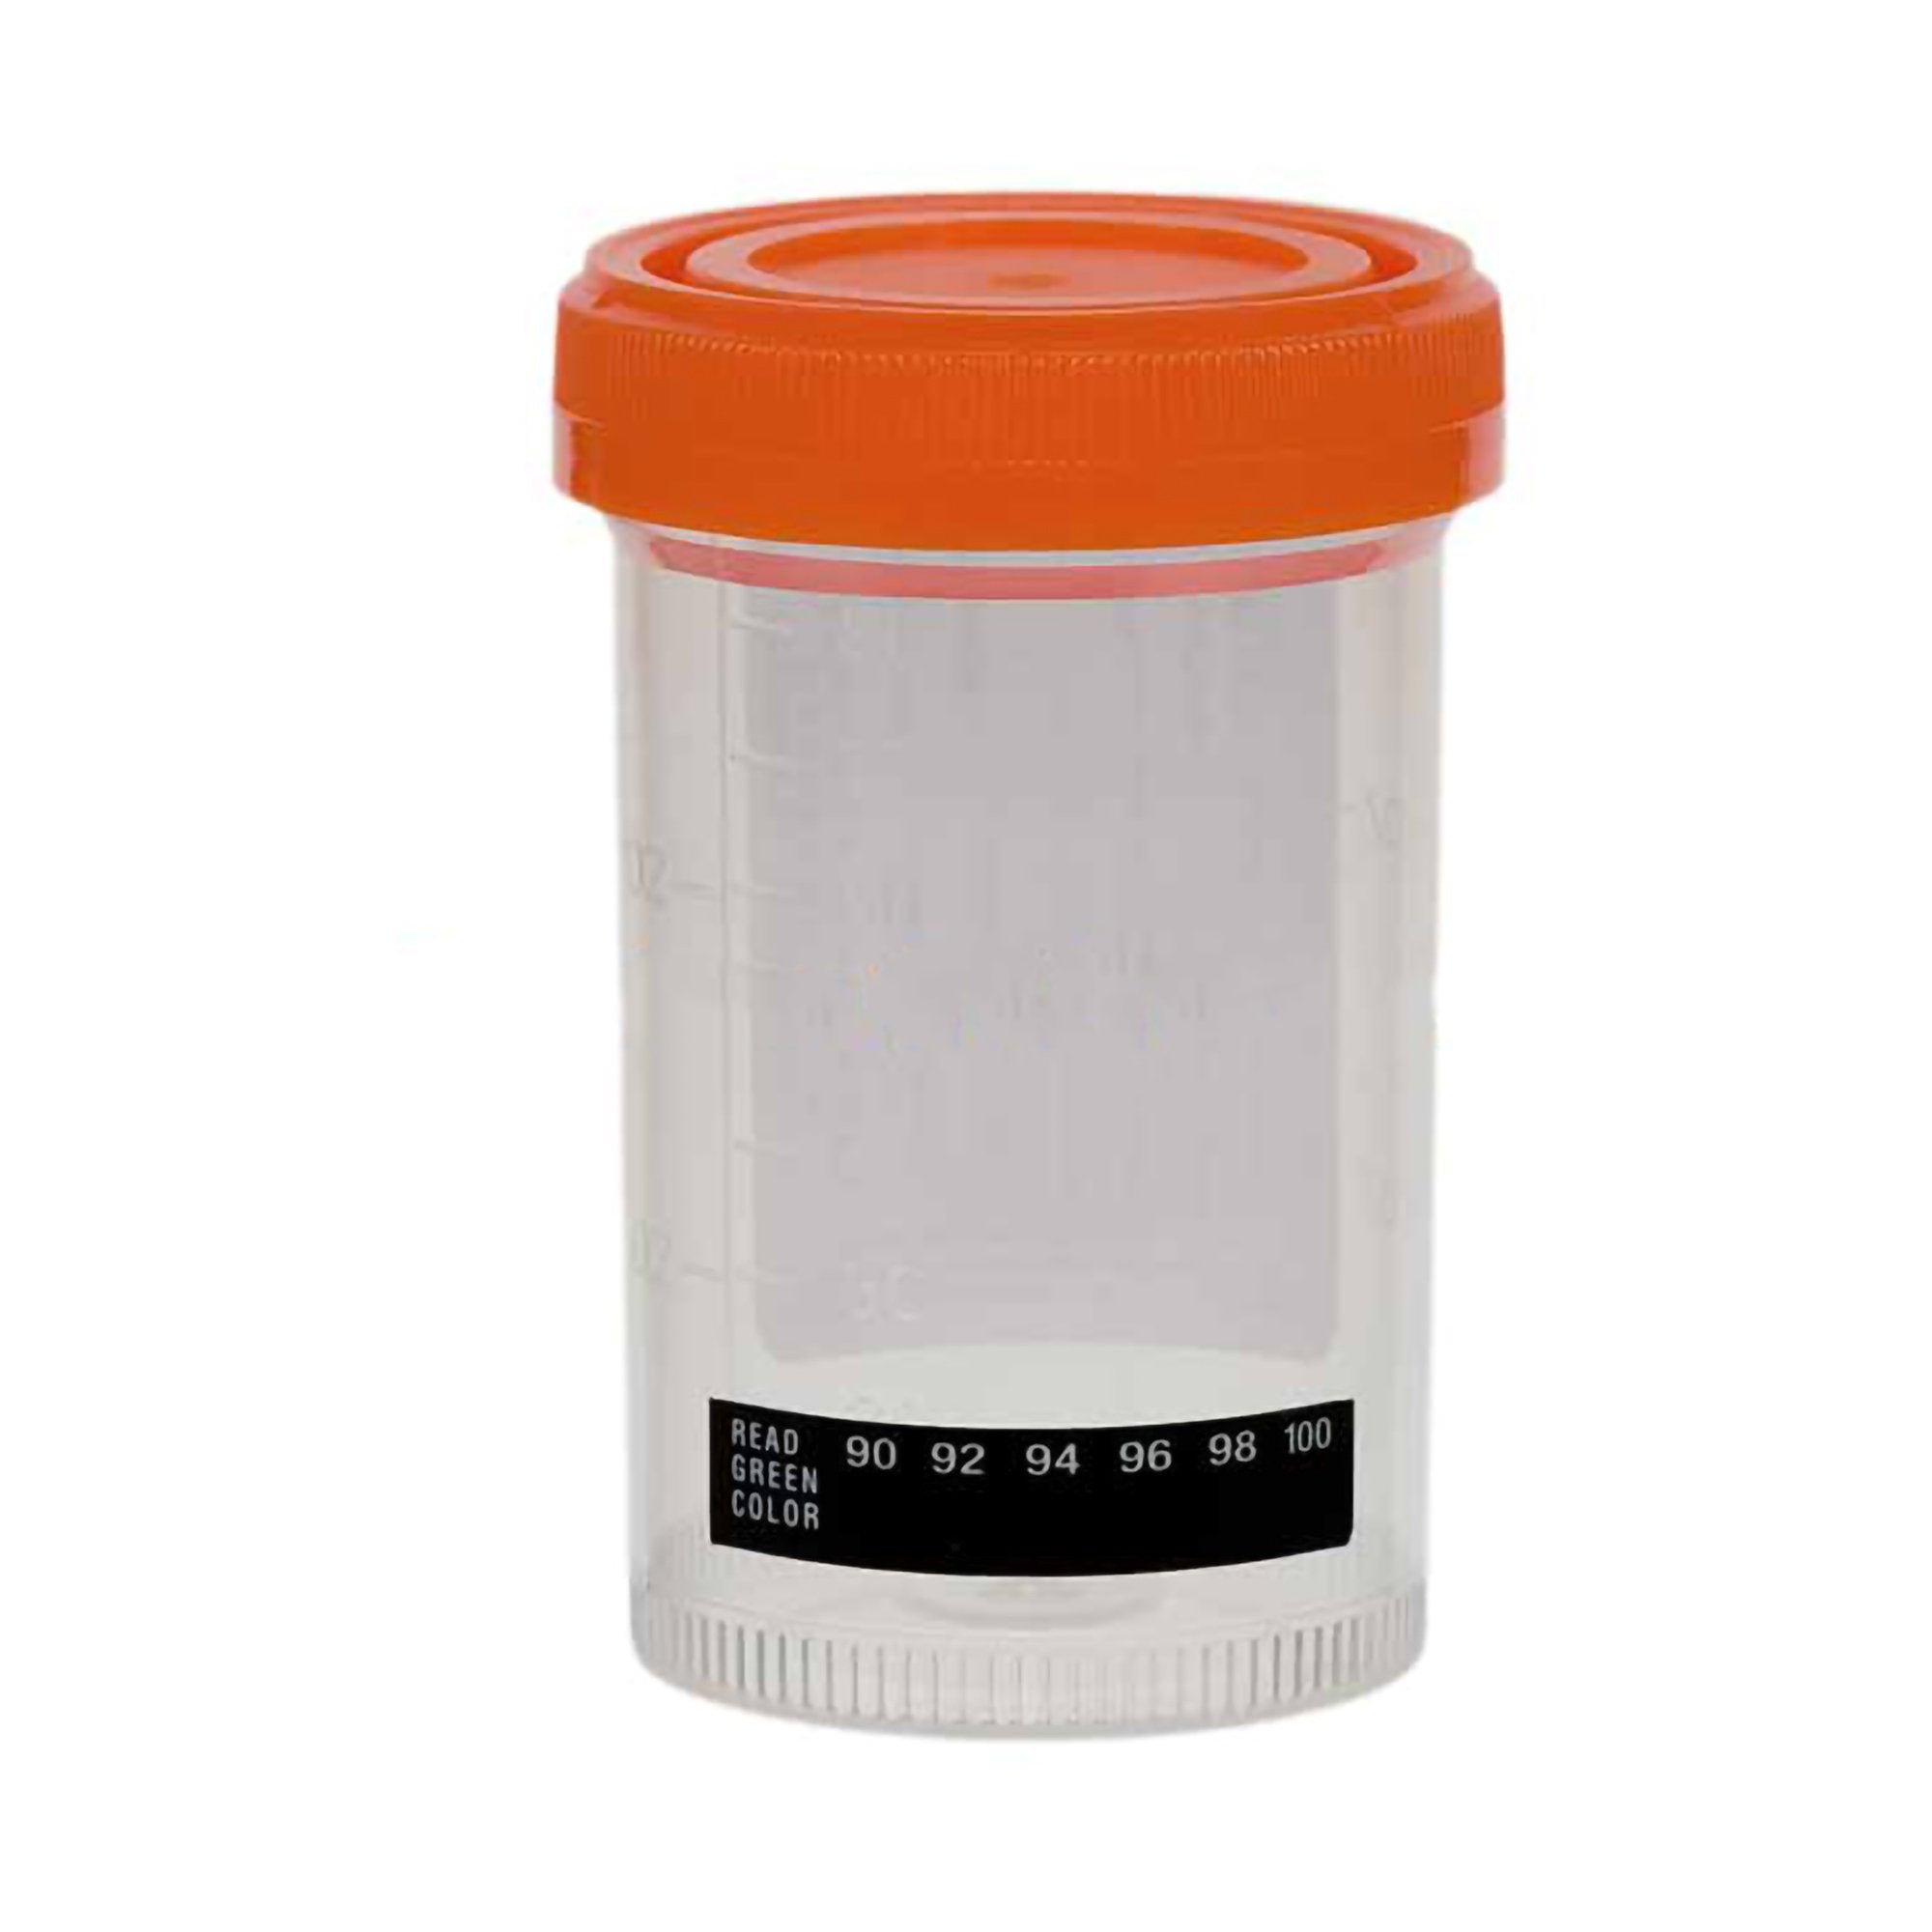 Temperature Strip Adhesive, 90 to 100F, 62 per Pack Urine Specimen Sample Cup